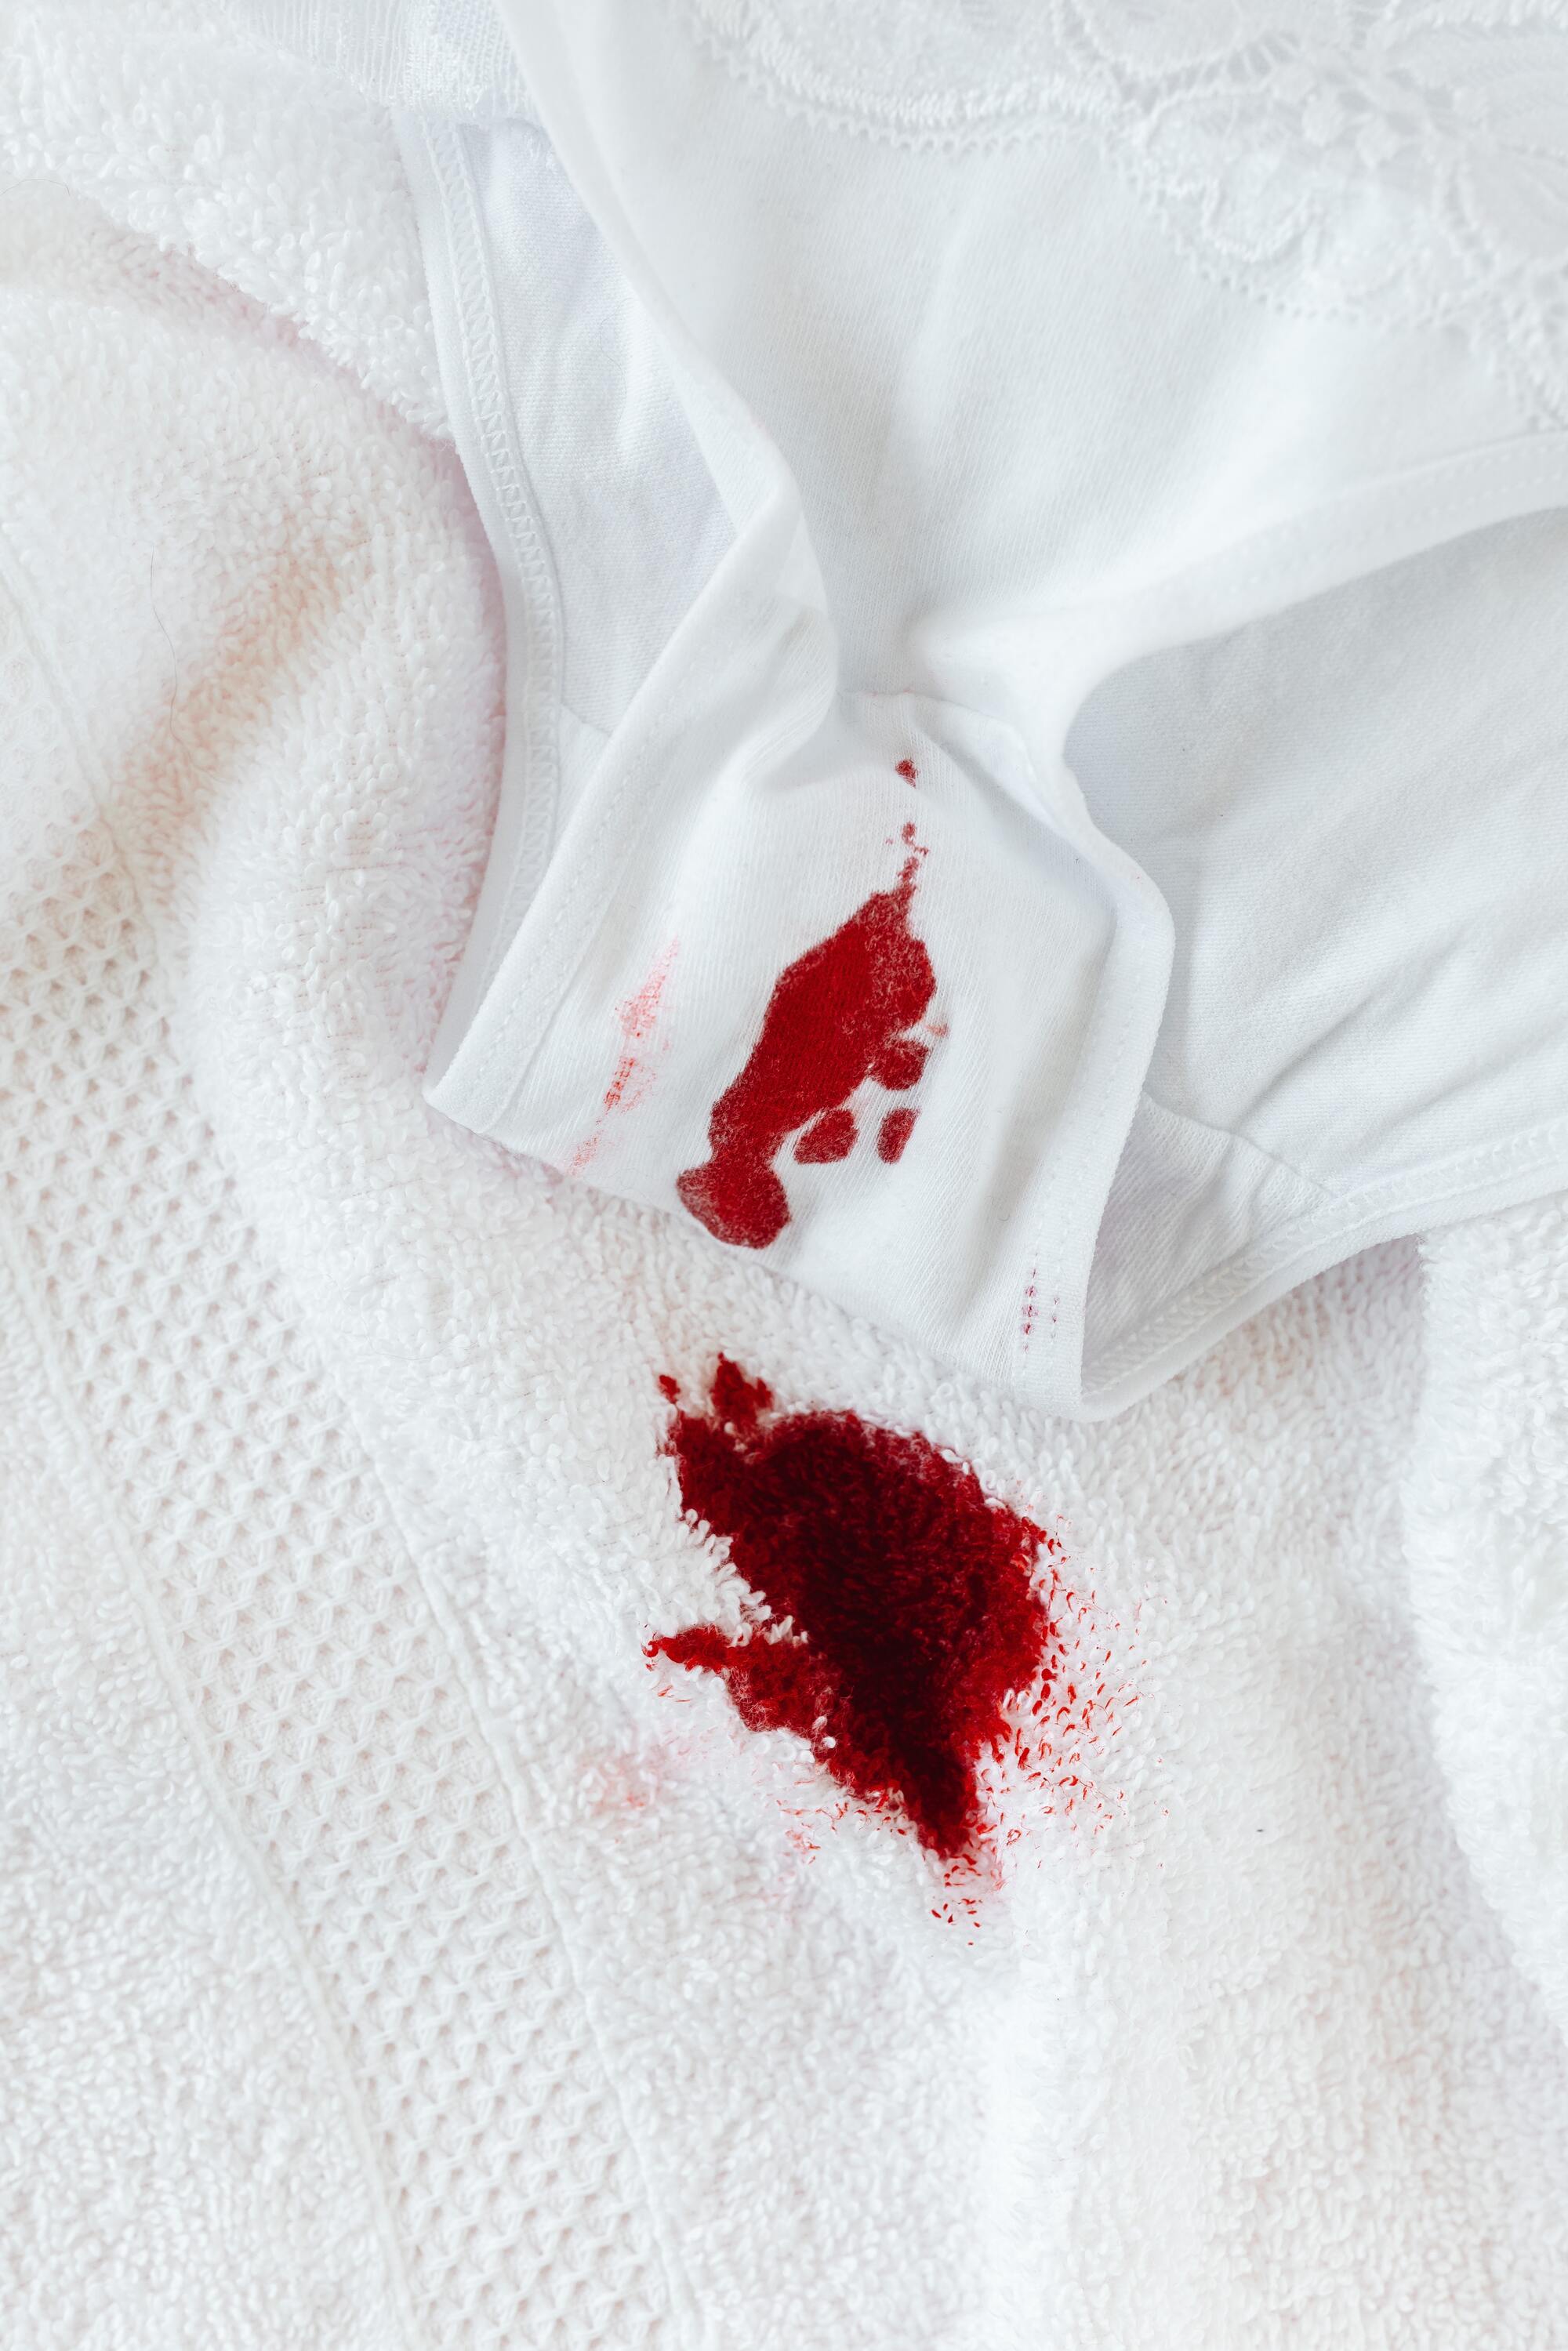 Menstruação irregular: o que pode ser e causas - Minha Vida